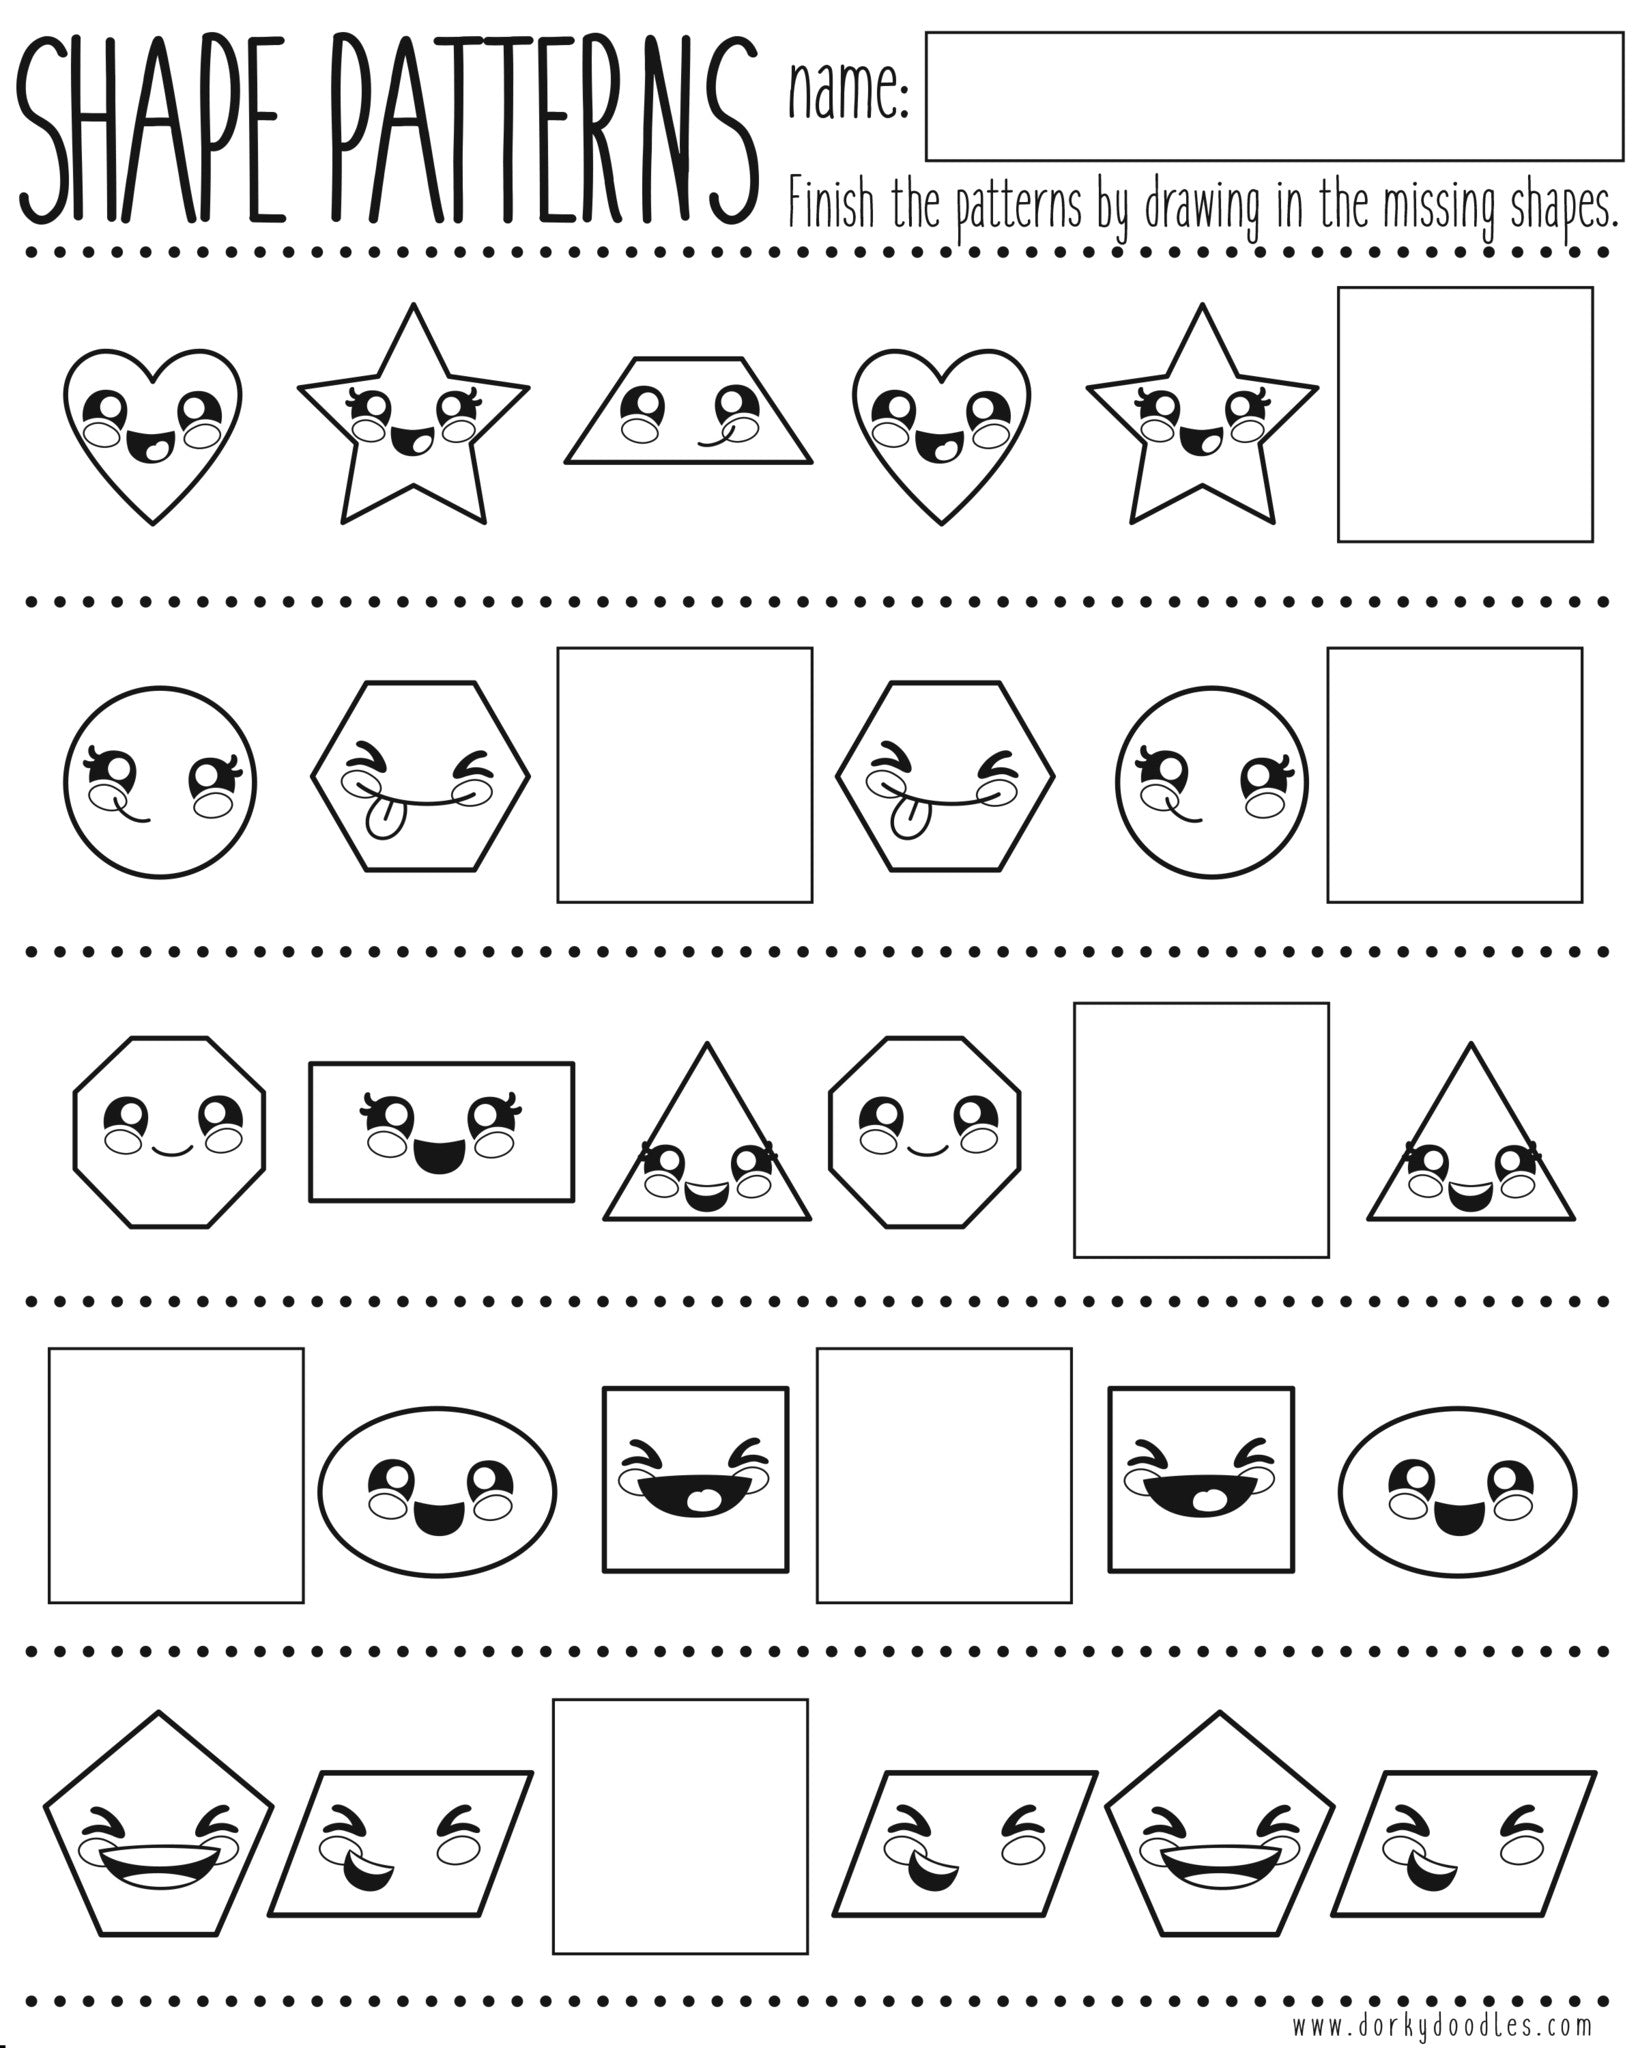 Shapes And Pattern Practice Printable Worksheet Dorky Doodles